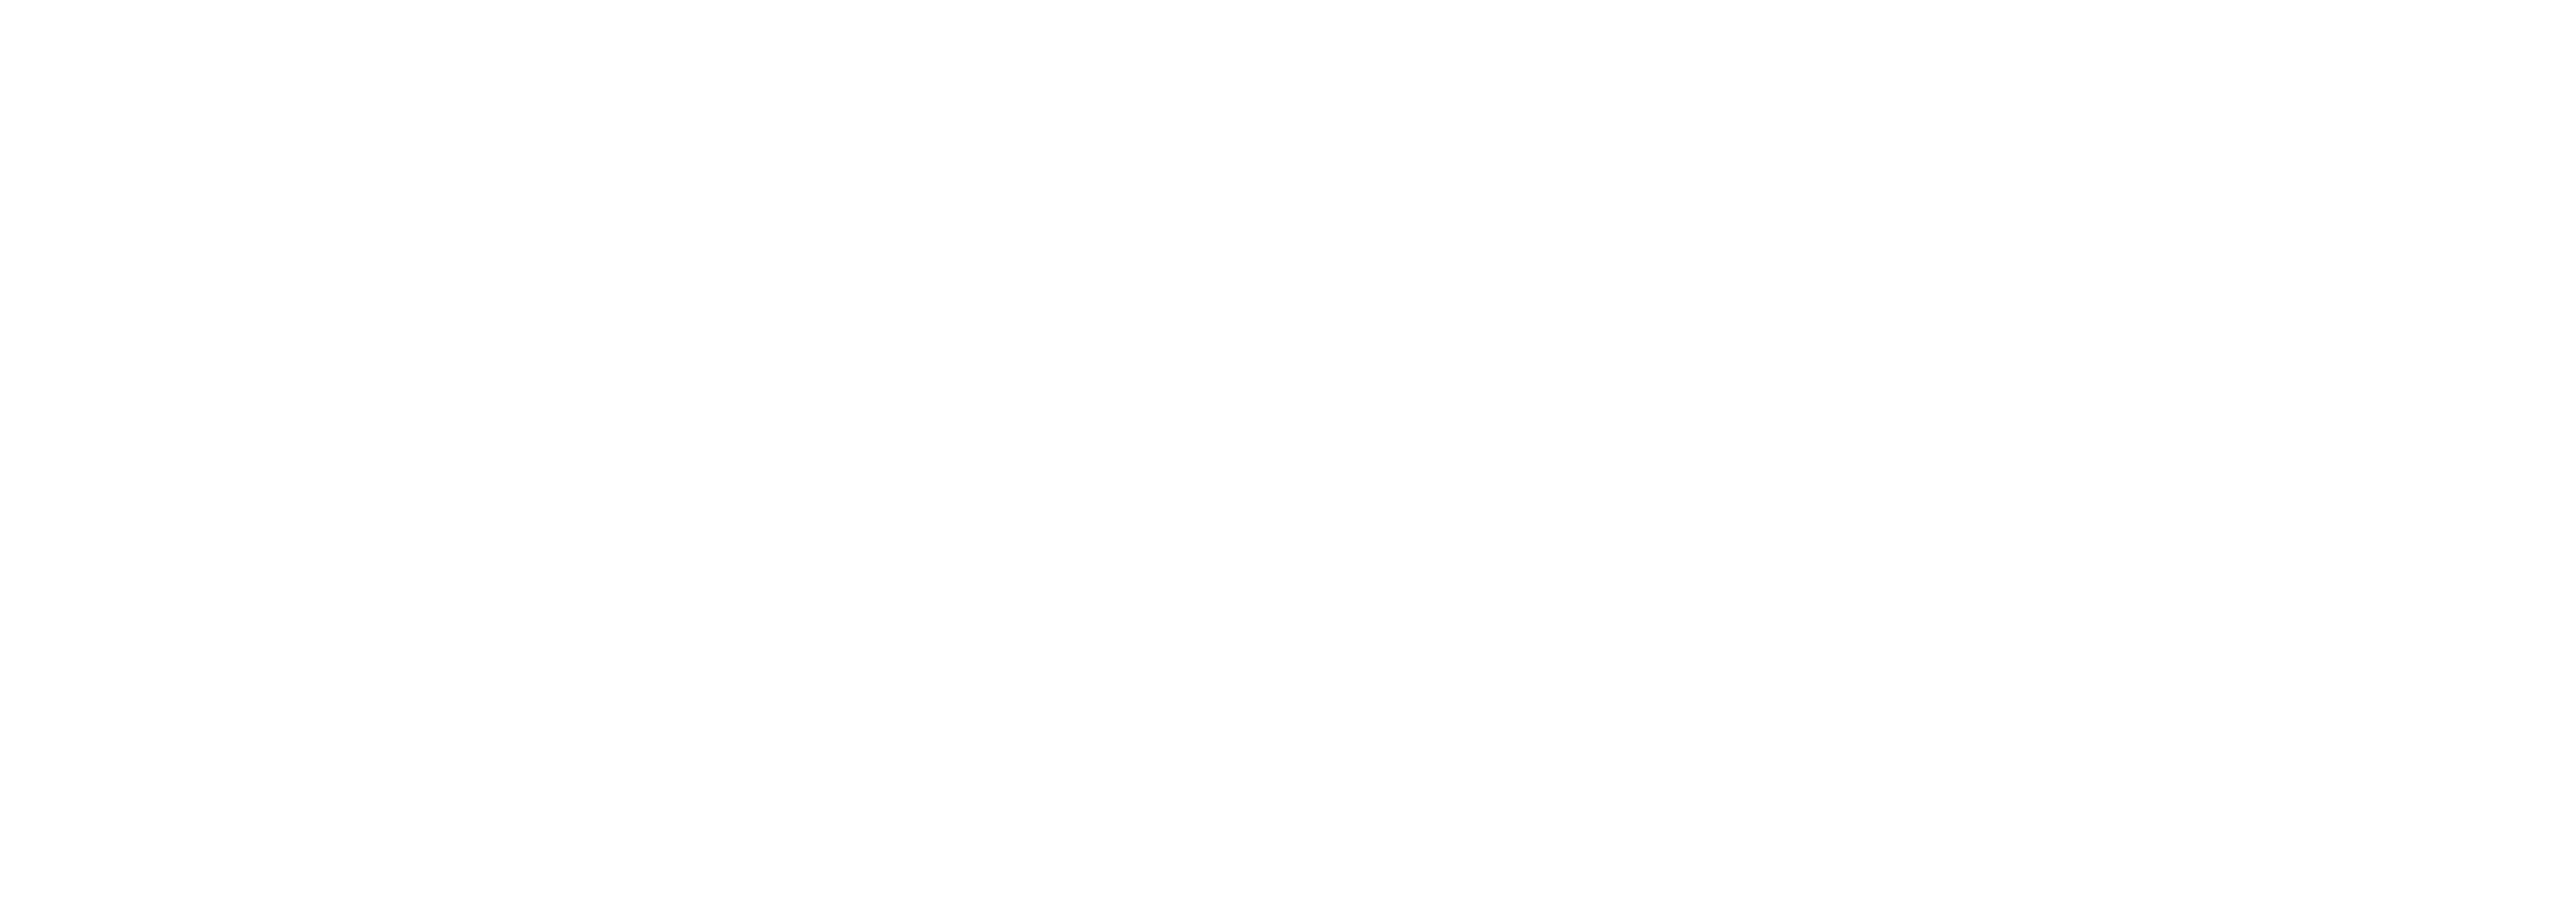 VSI Vox Mundi